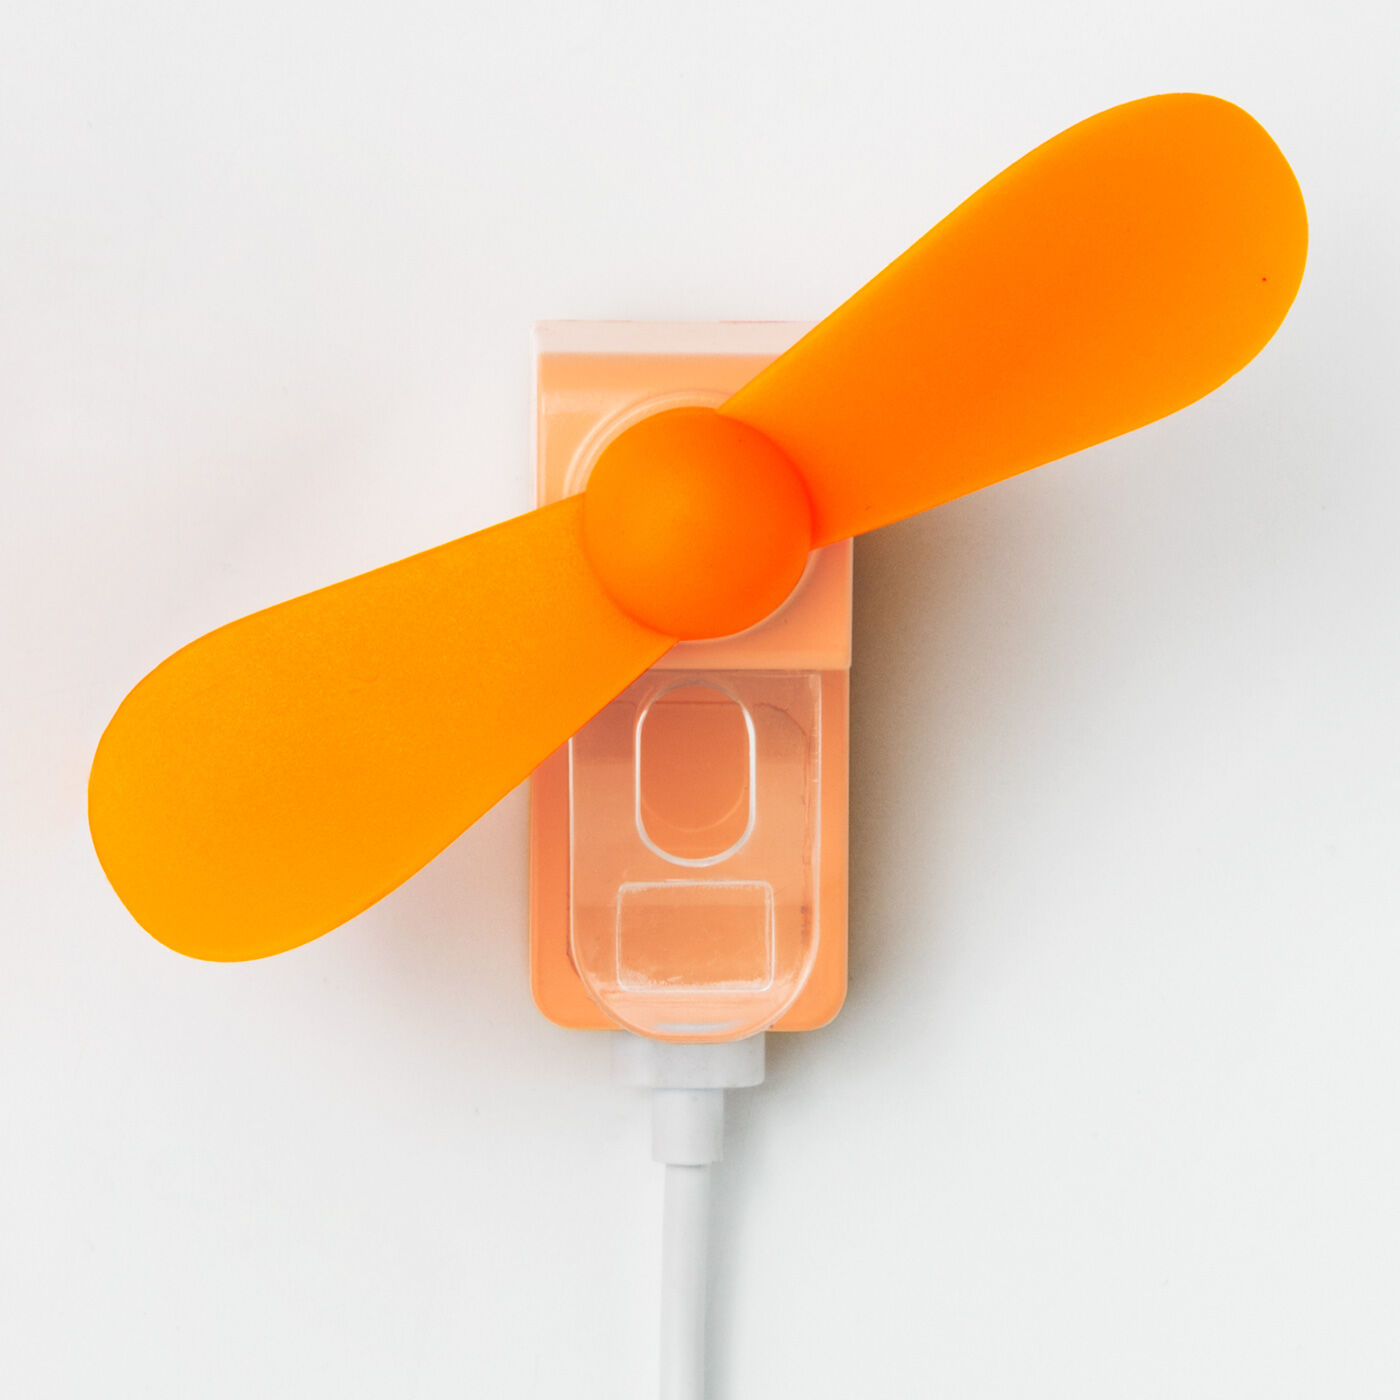 L'AMIPLUS|スマートフォンから風を送る 操作しながら涼めるスマホファンの会|〈オレンジ〉